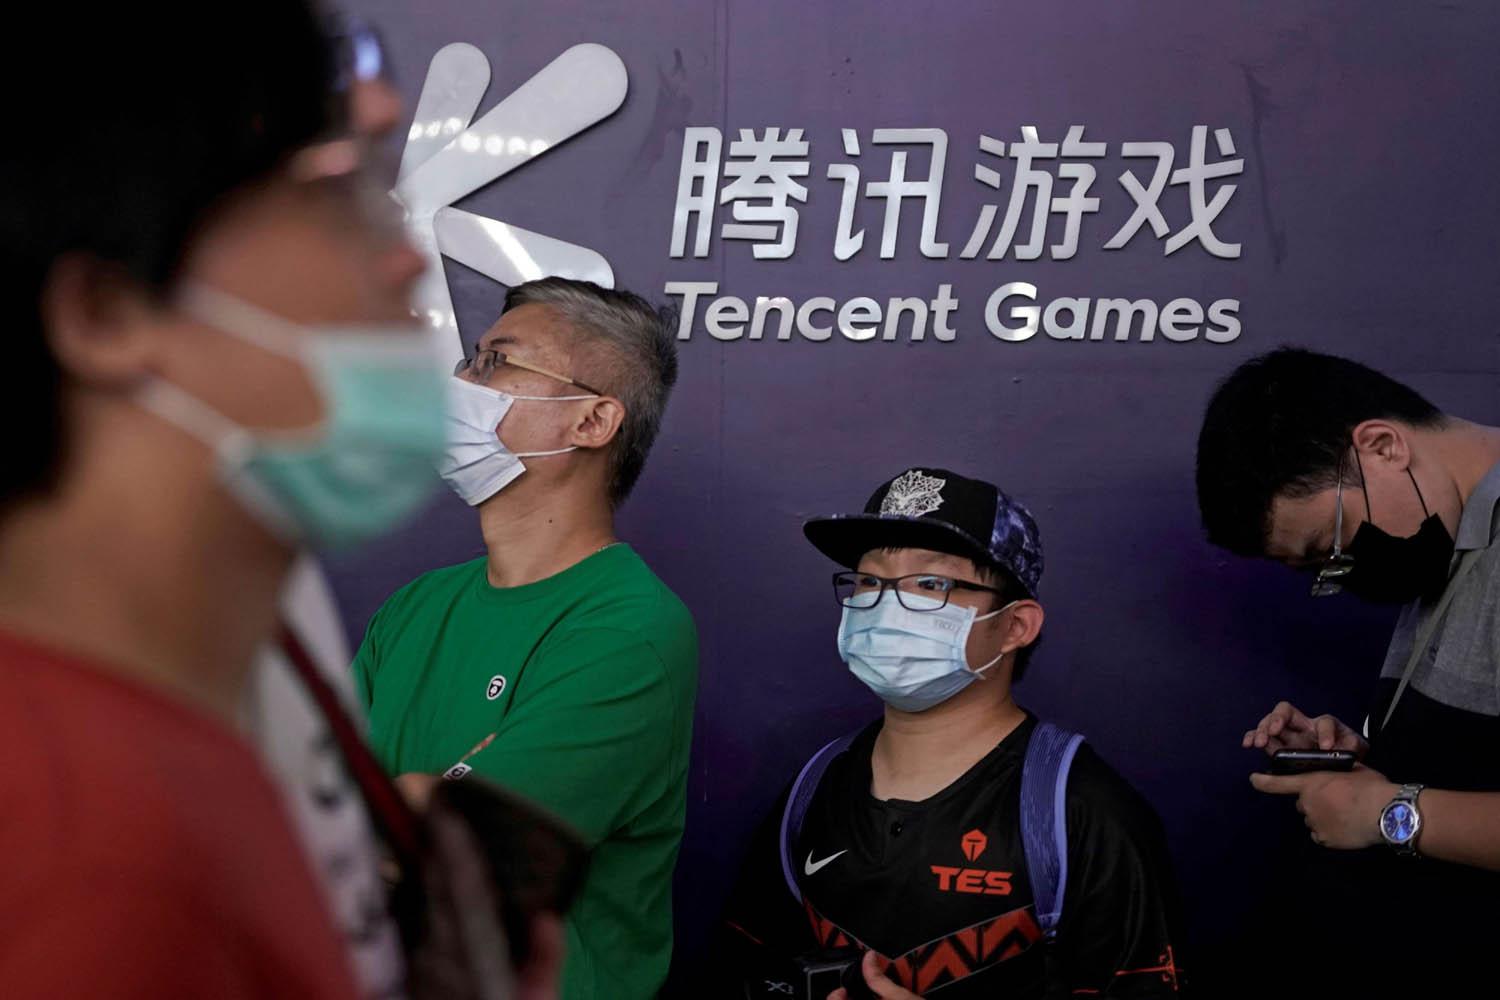 صينيون ينتظرون دورهم للتسجيل في معرض للألعاب الالكترونية في شنغهاي